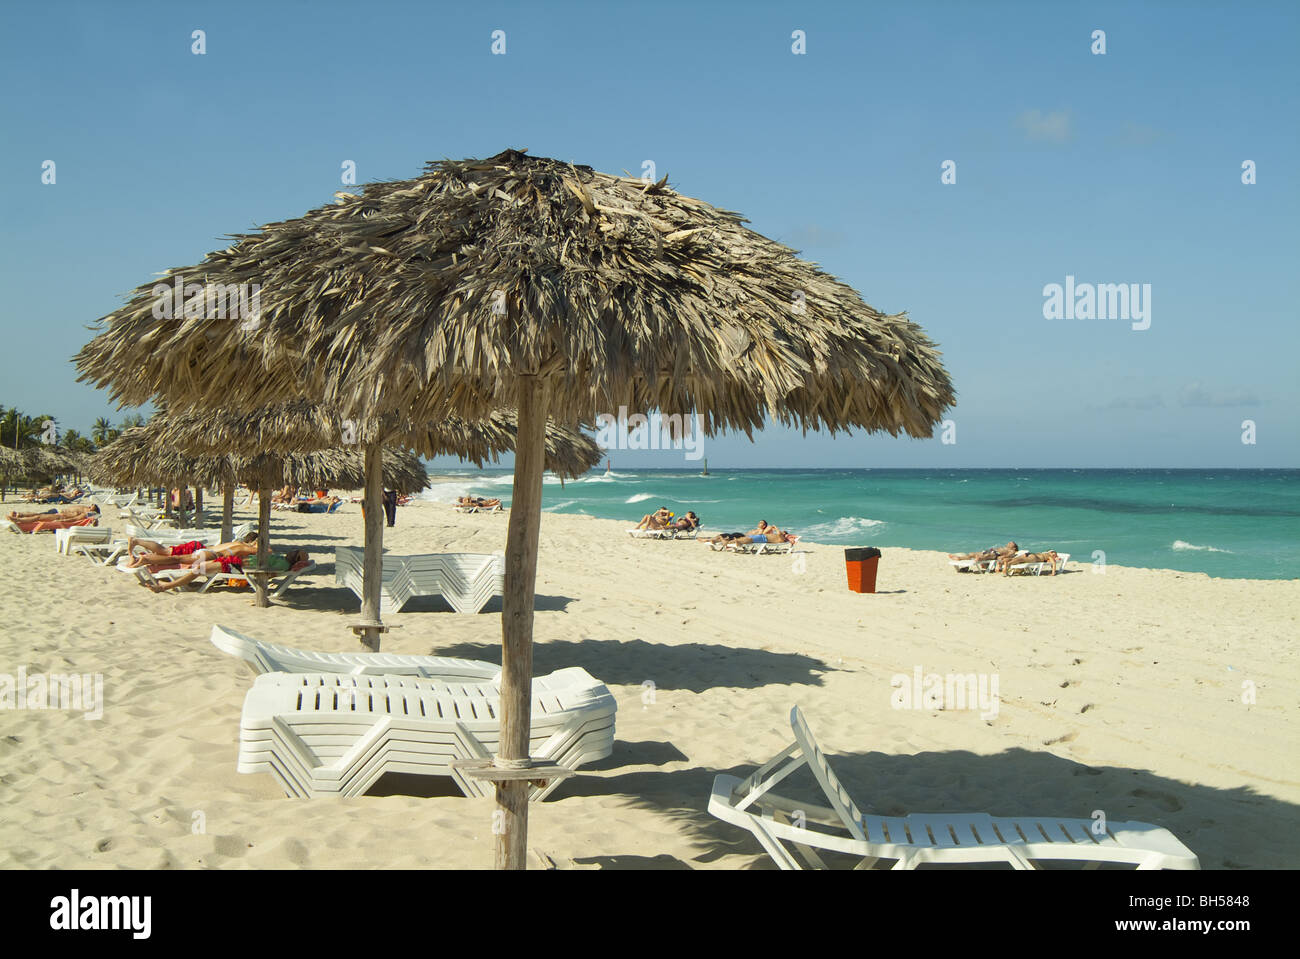 Una playa reed sombrilla en la brillante luz del sol en la playa, Cuba. Foto de stock